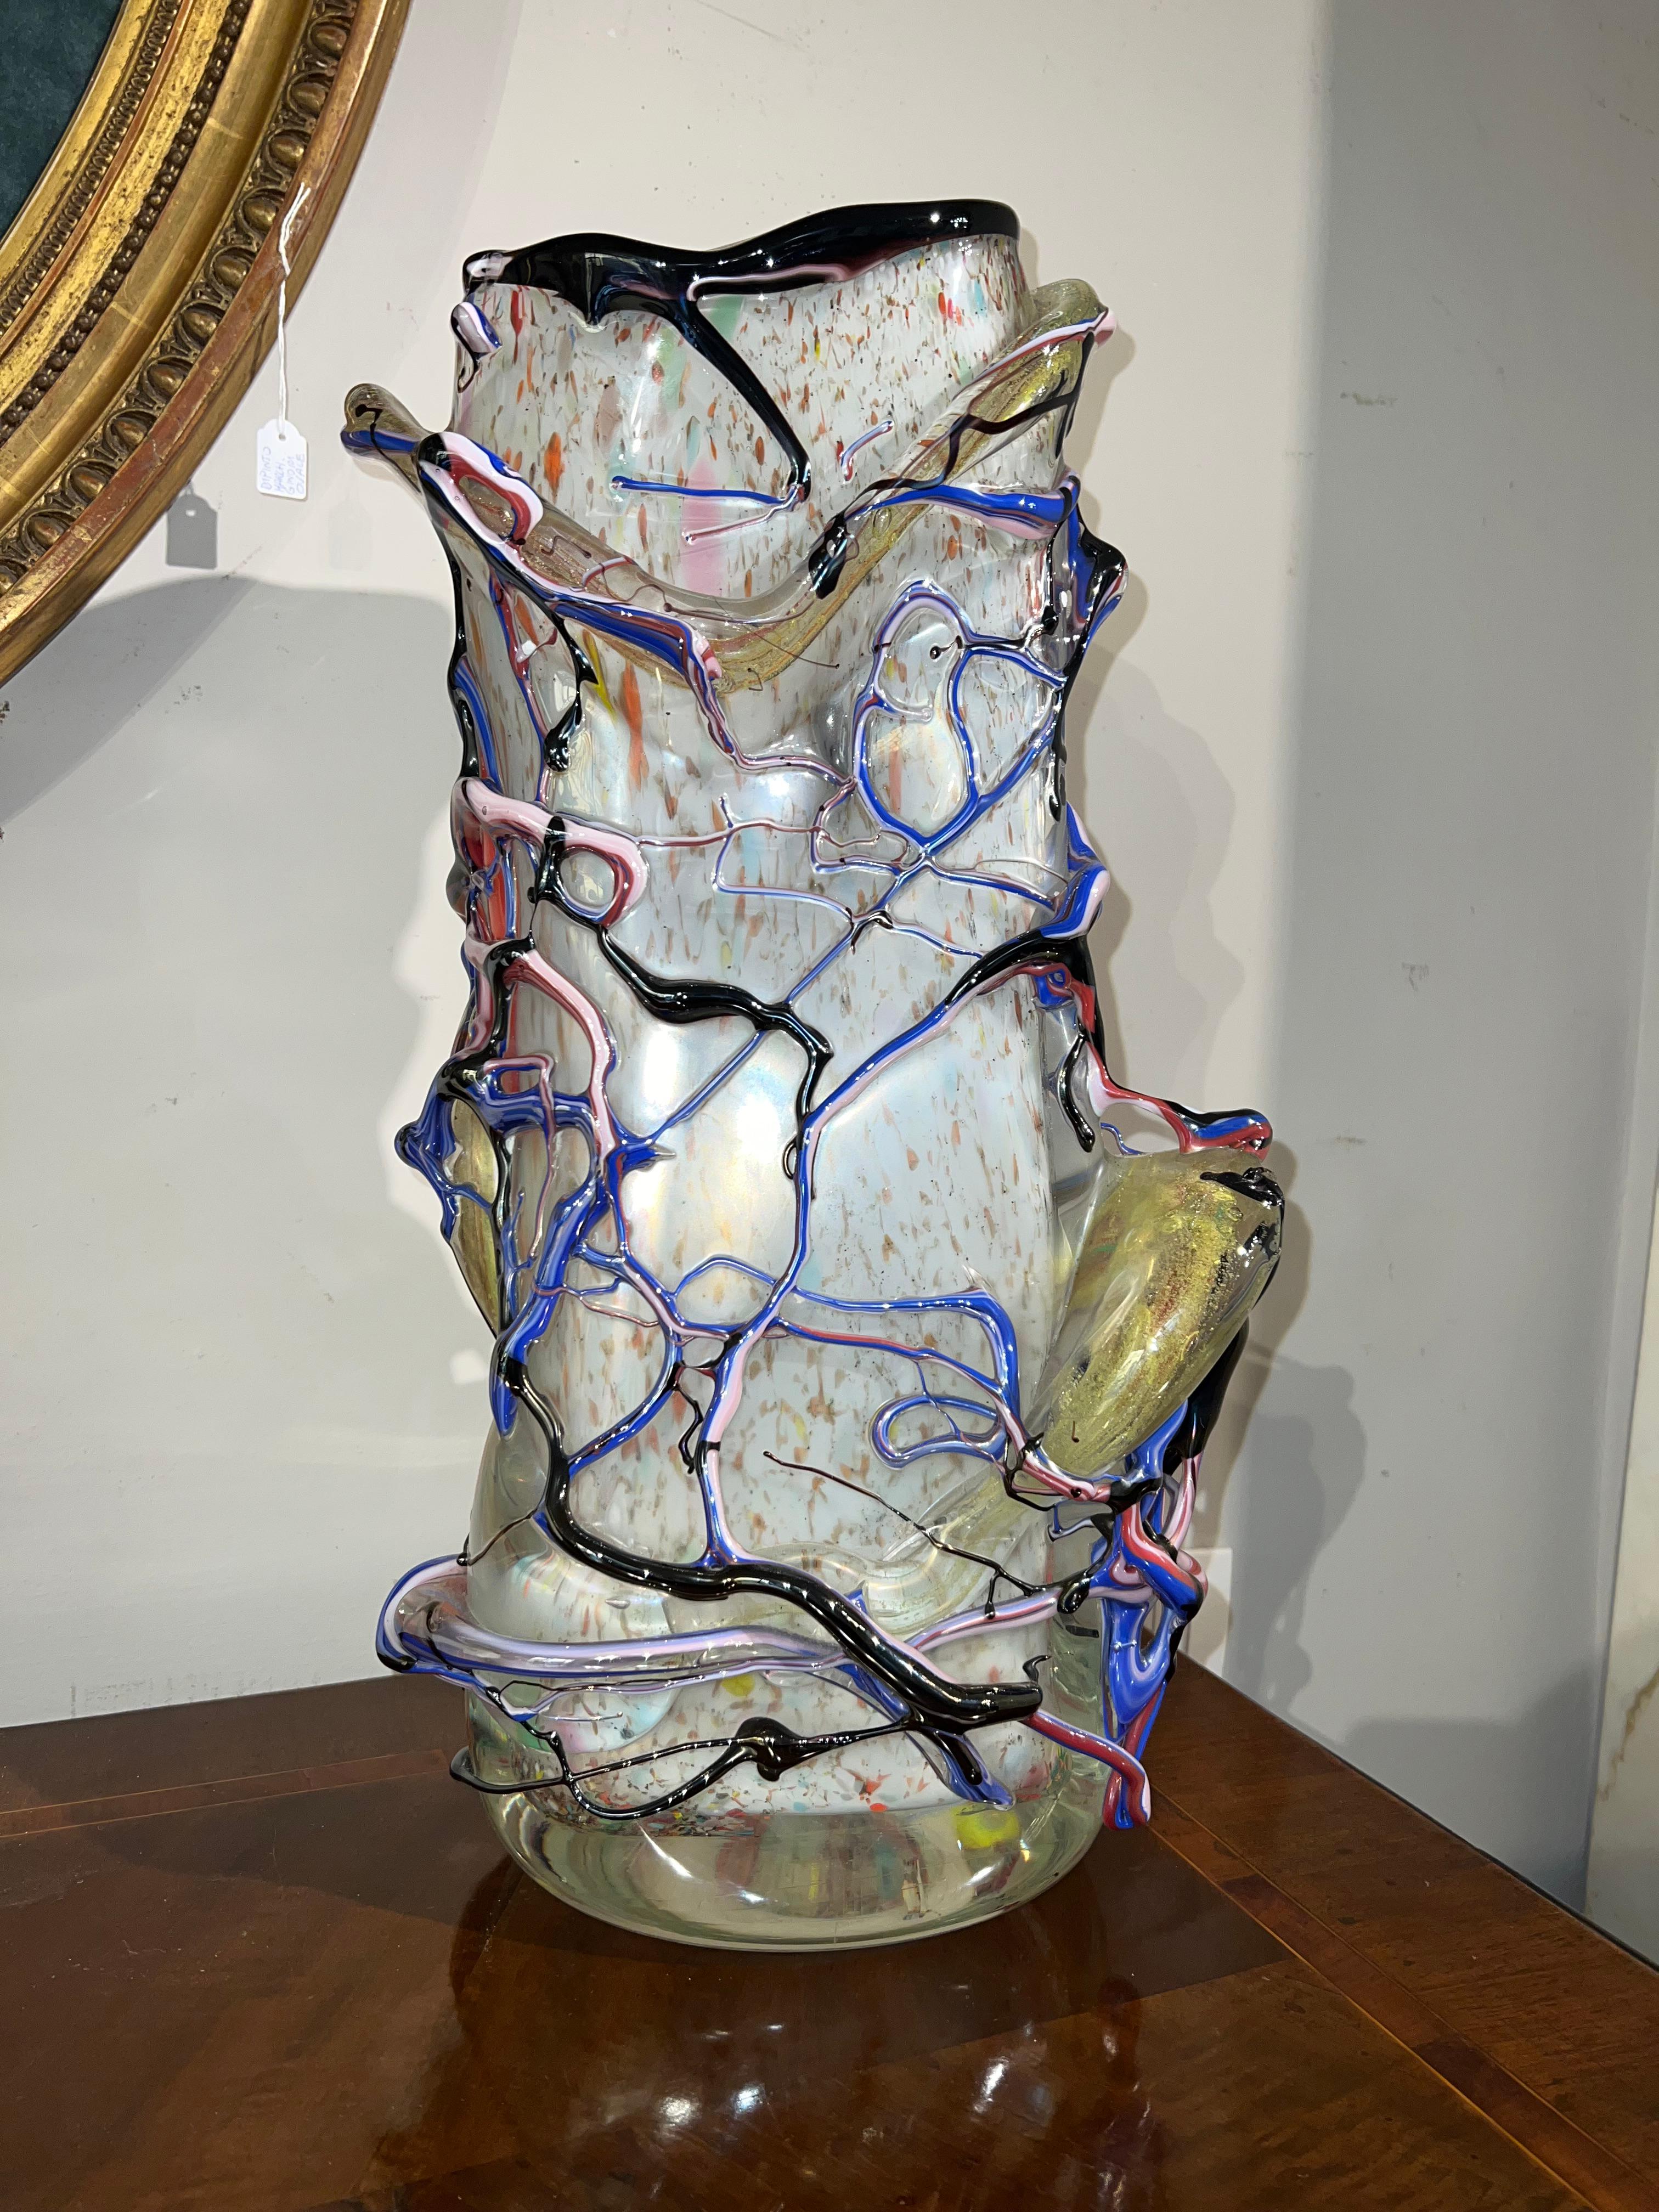 Schöne und einzigartige Vase aus Muranoglas. Diese Vase wurde mit viel Geschick aus milchigem Glas für die Innenseite und einer polychromen, fadenförmigen Aststruktur für die Außenseite hergestellt. Die mehrfarbigen Glasdekorationen verleihen dieser